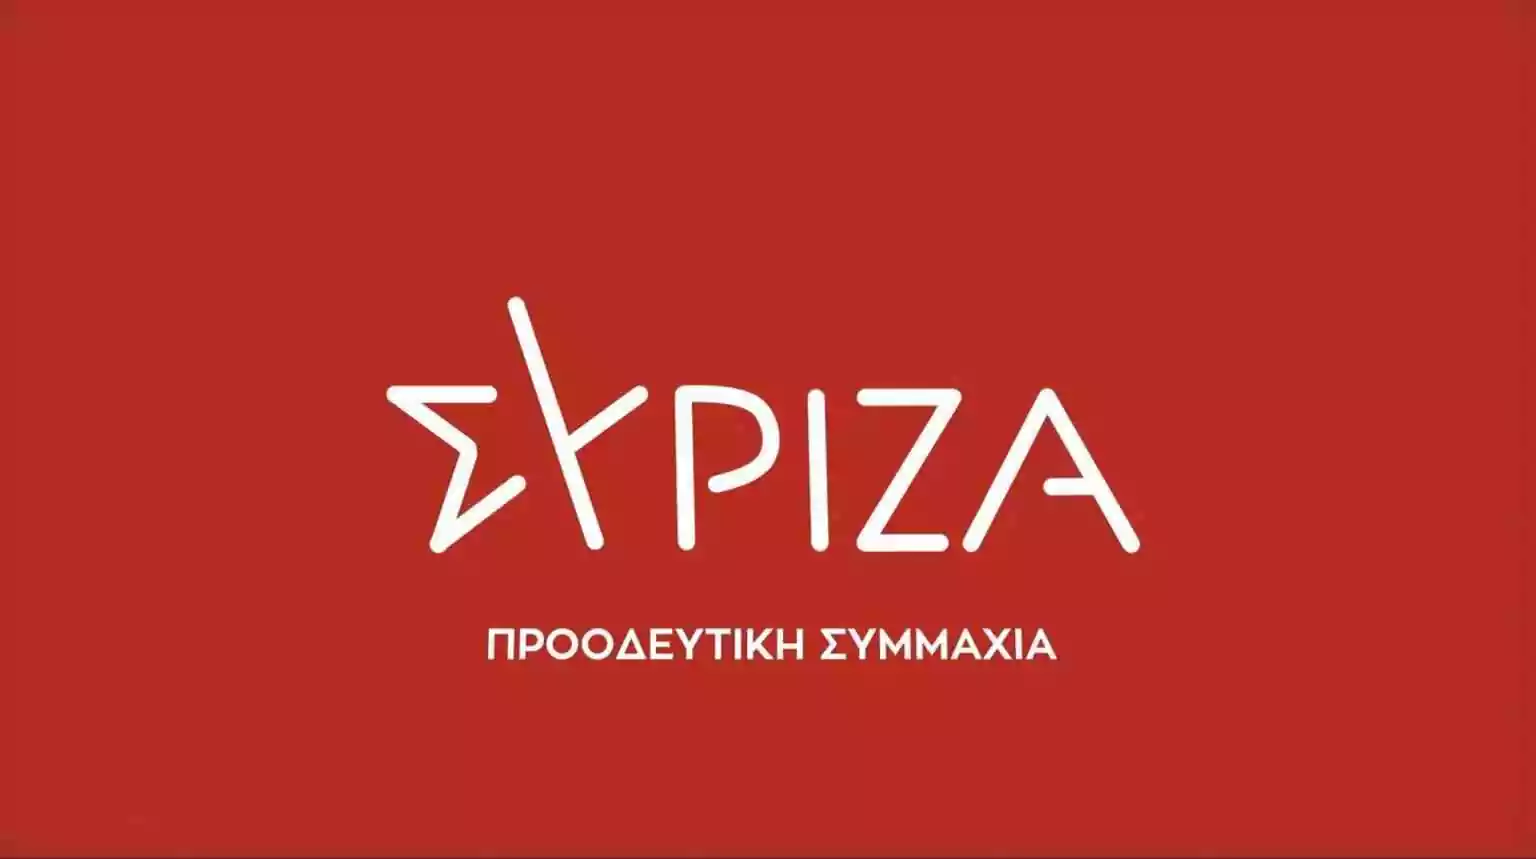 syriza-red-biglogo